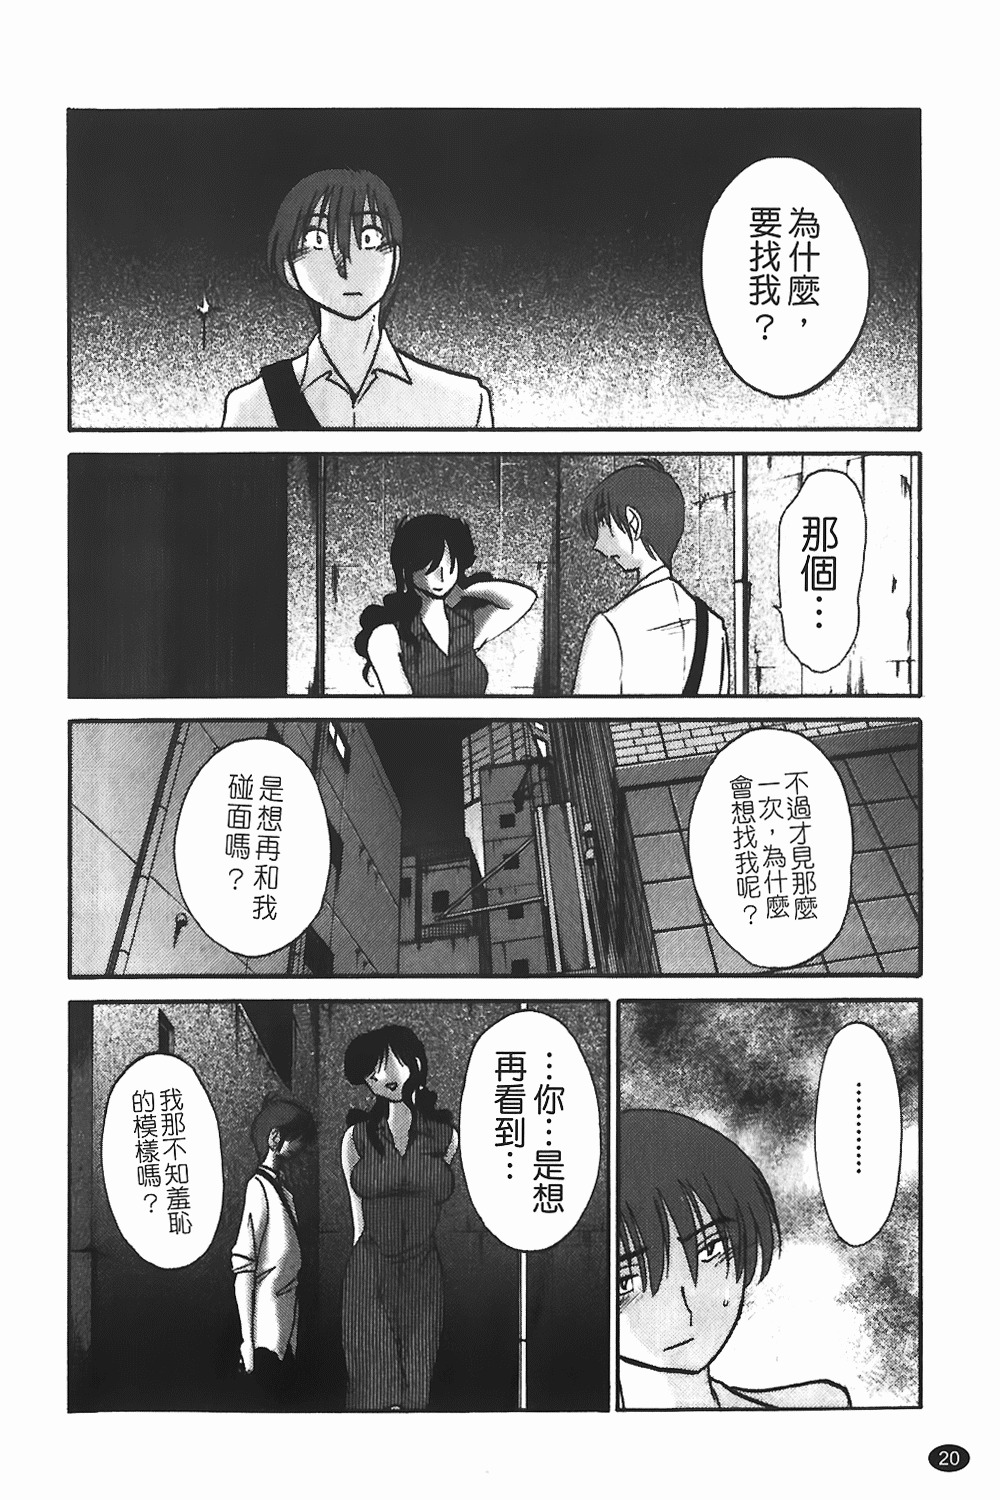 [TsuyaTsuya] Monokage no Iris 1 | 陰影中的伊利斯 1 [Chinese] page 17 full